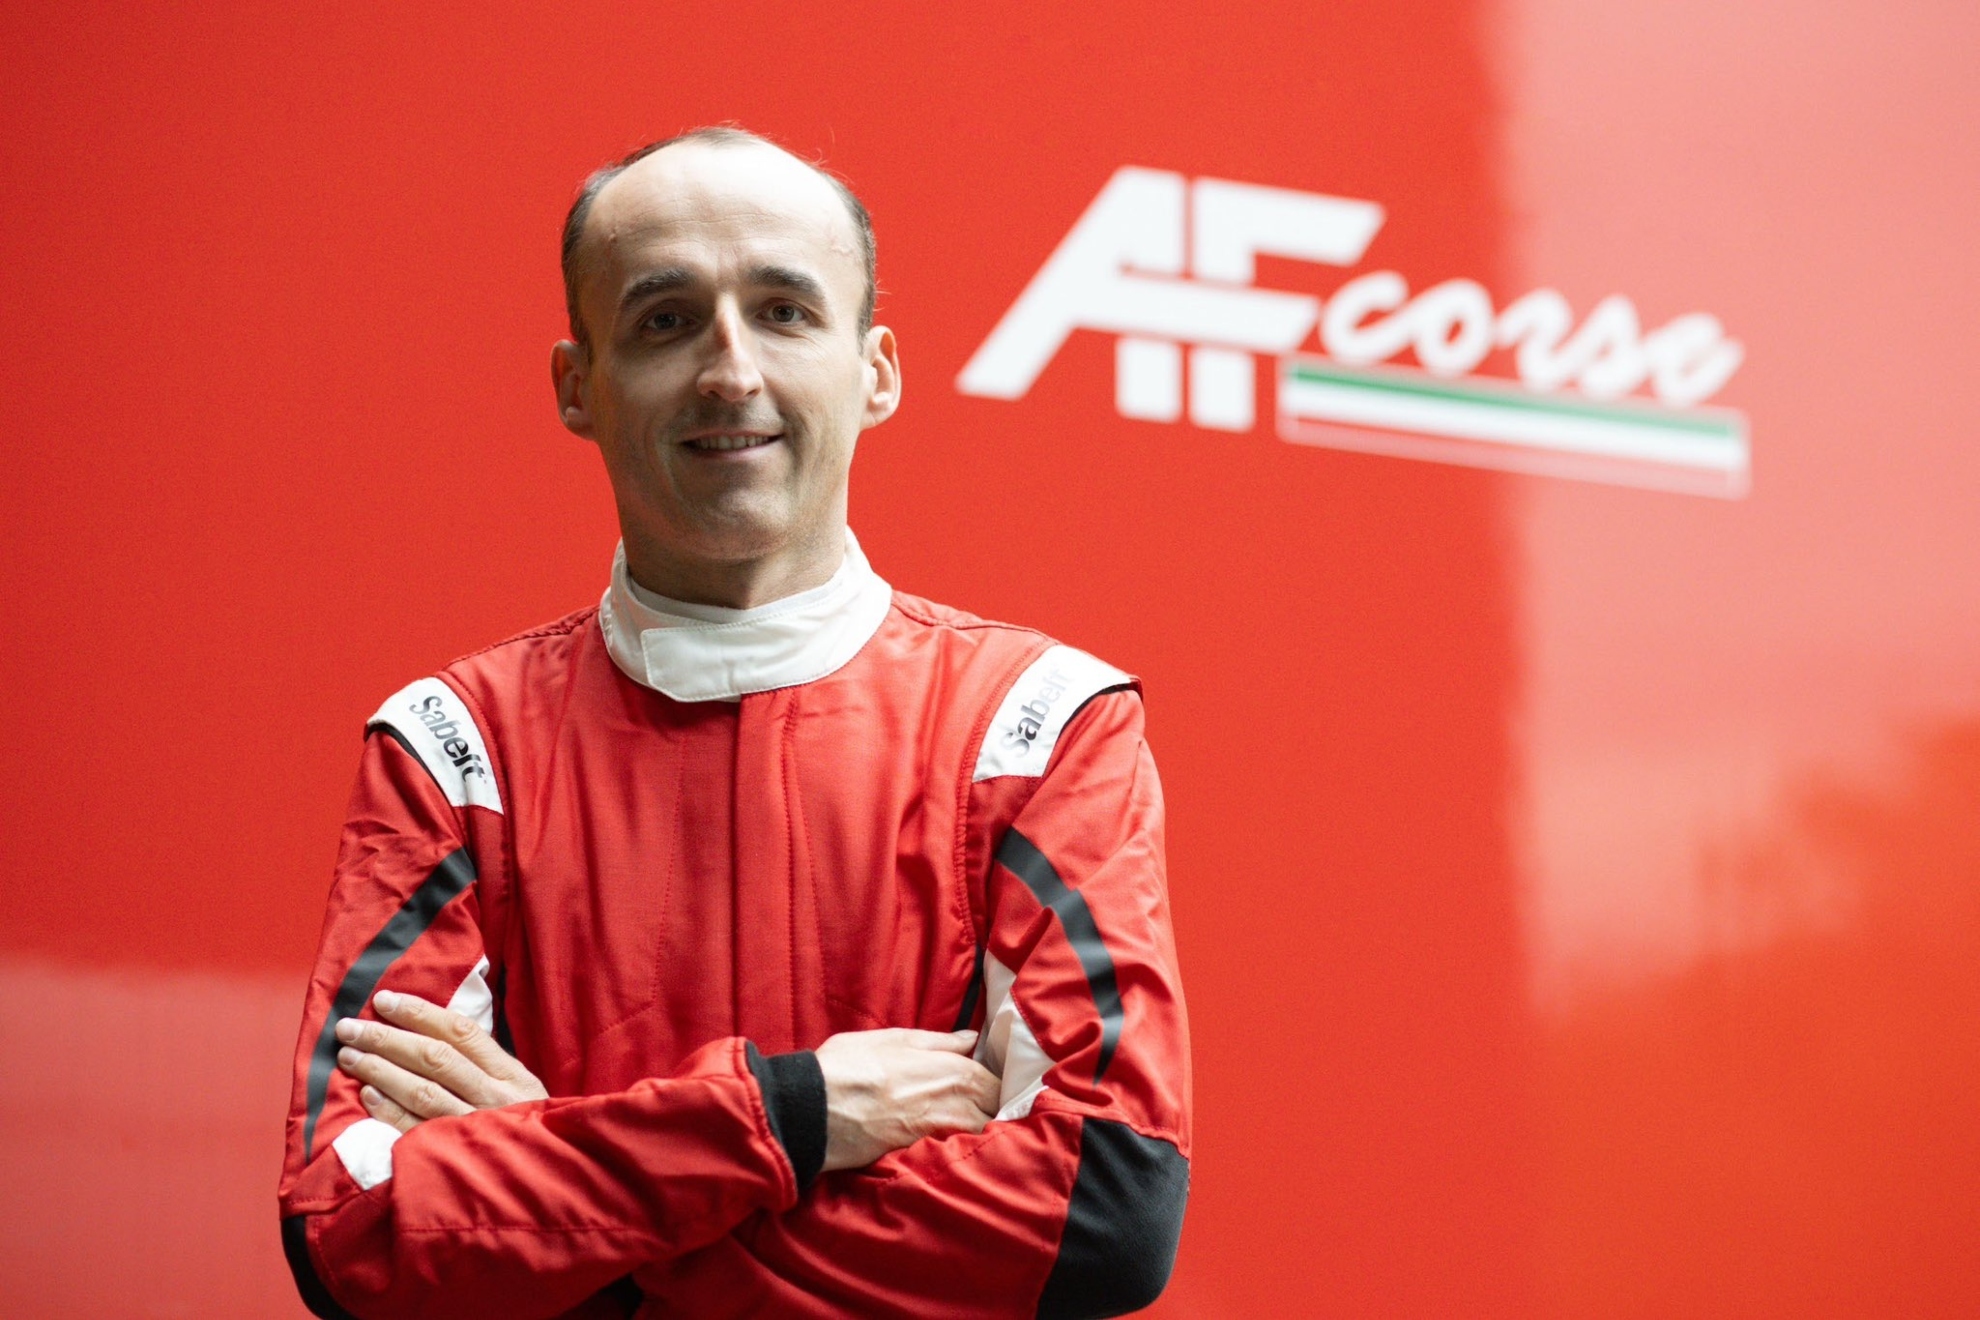 El destino de Robert Kubica ser� pilotar el primer Ferrari 499P suministrado por Maranello.